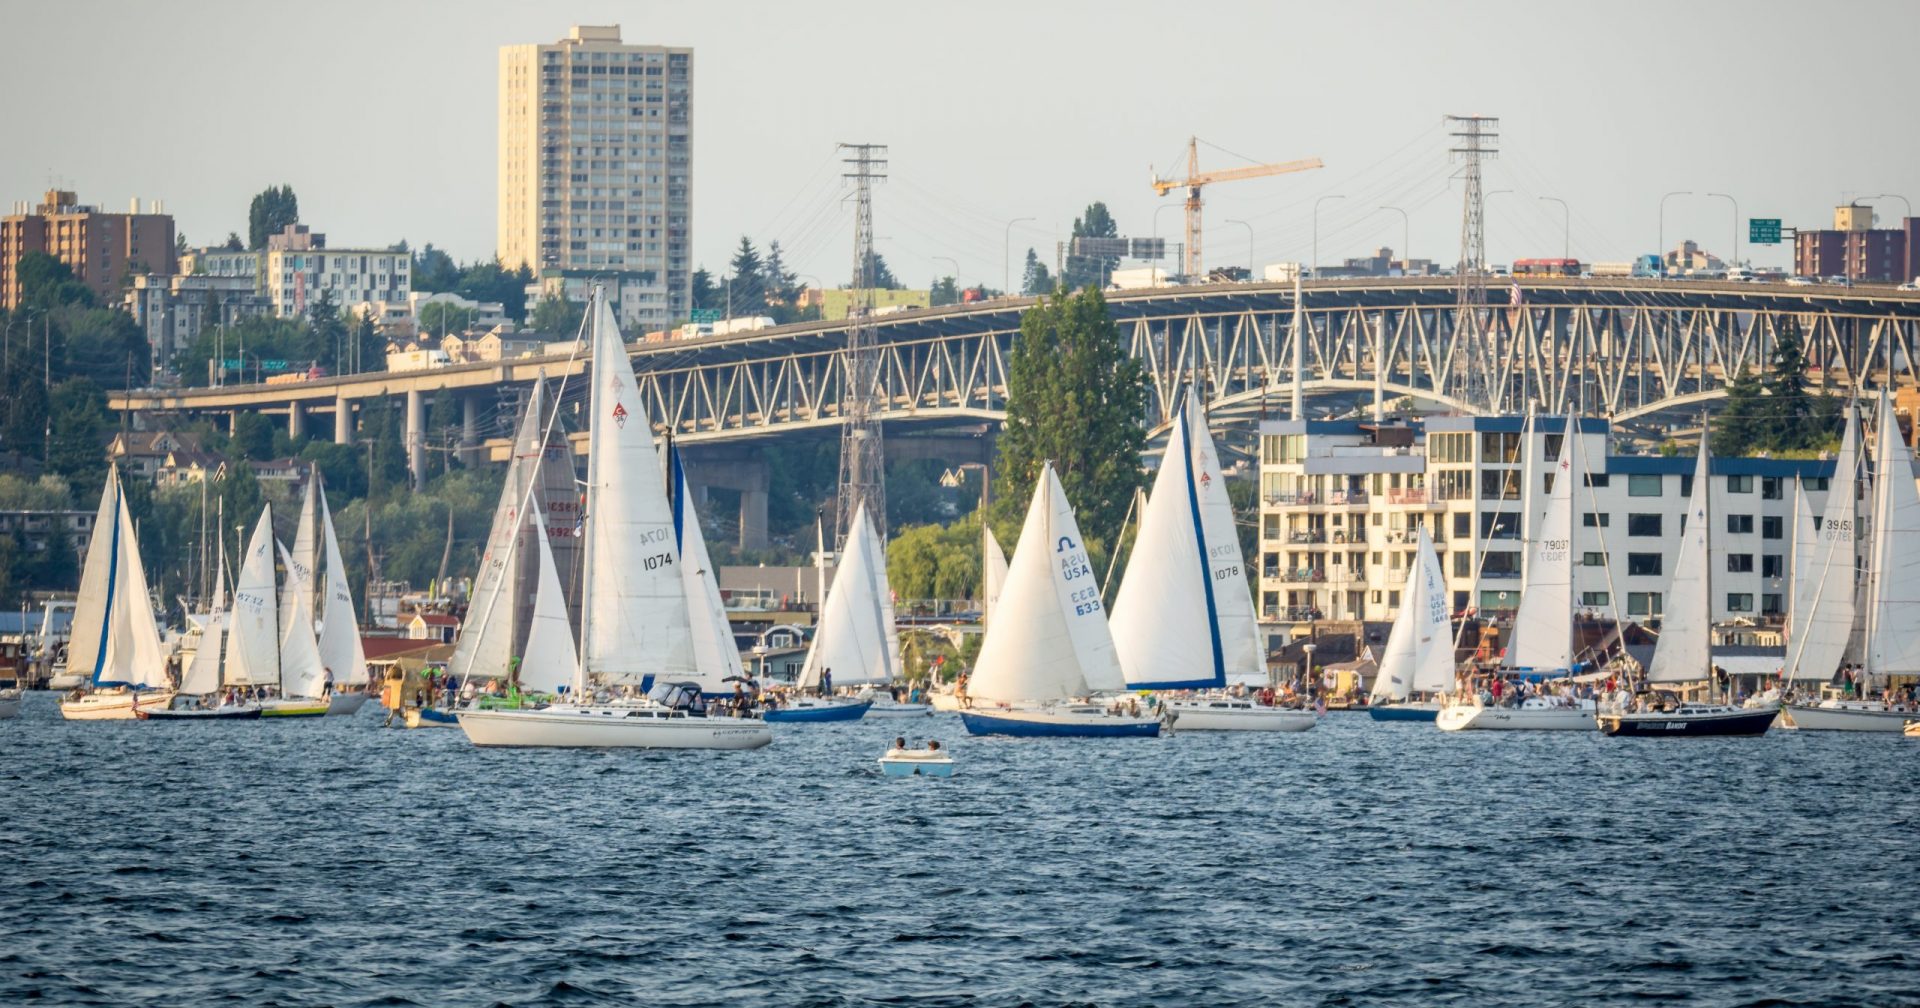 Seattle Aktion Sailing scaled e1718199641367 1920x1008 - Seattle - Ganz Schön Sportlich!